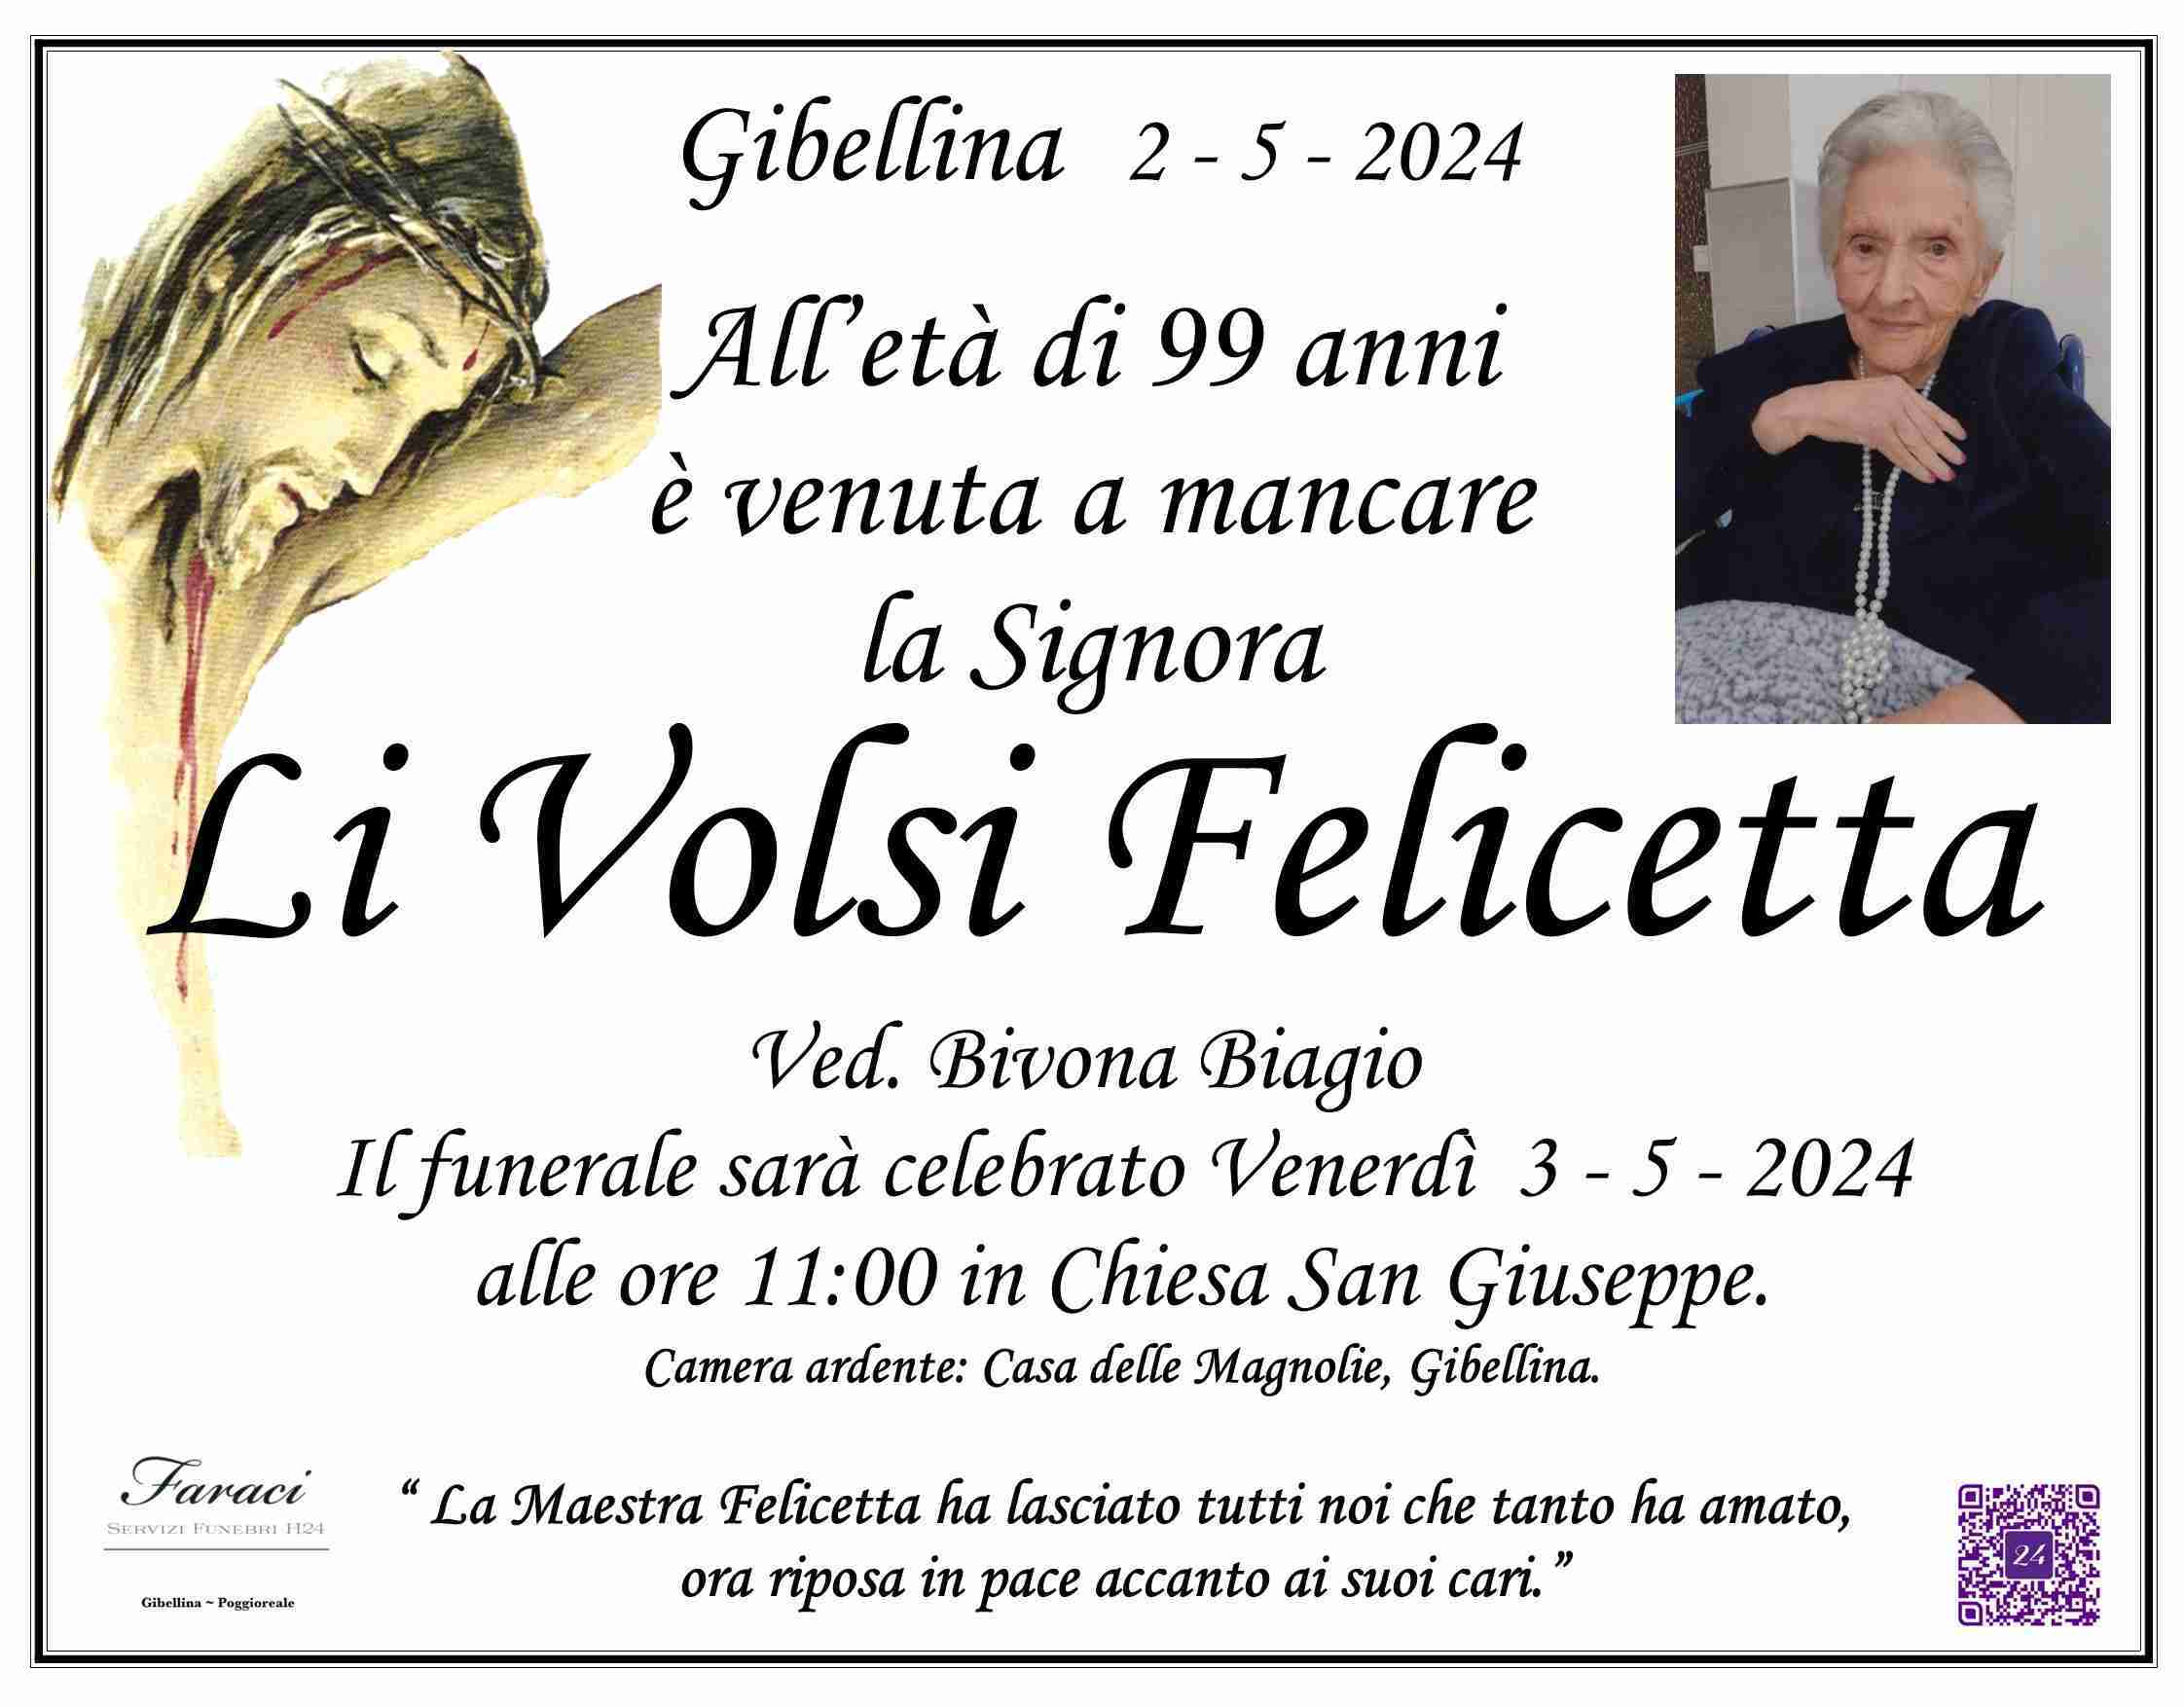 Felicetta Li Volsi